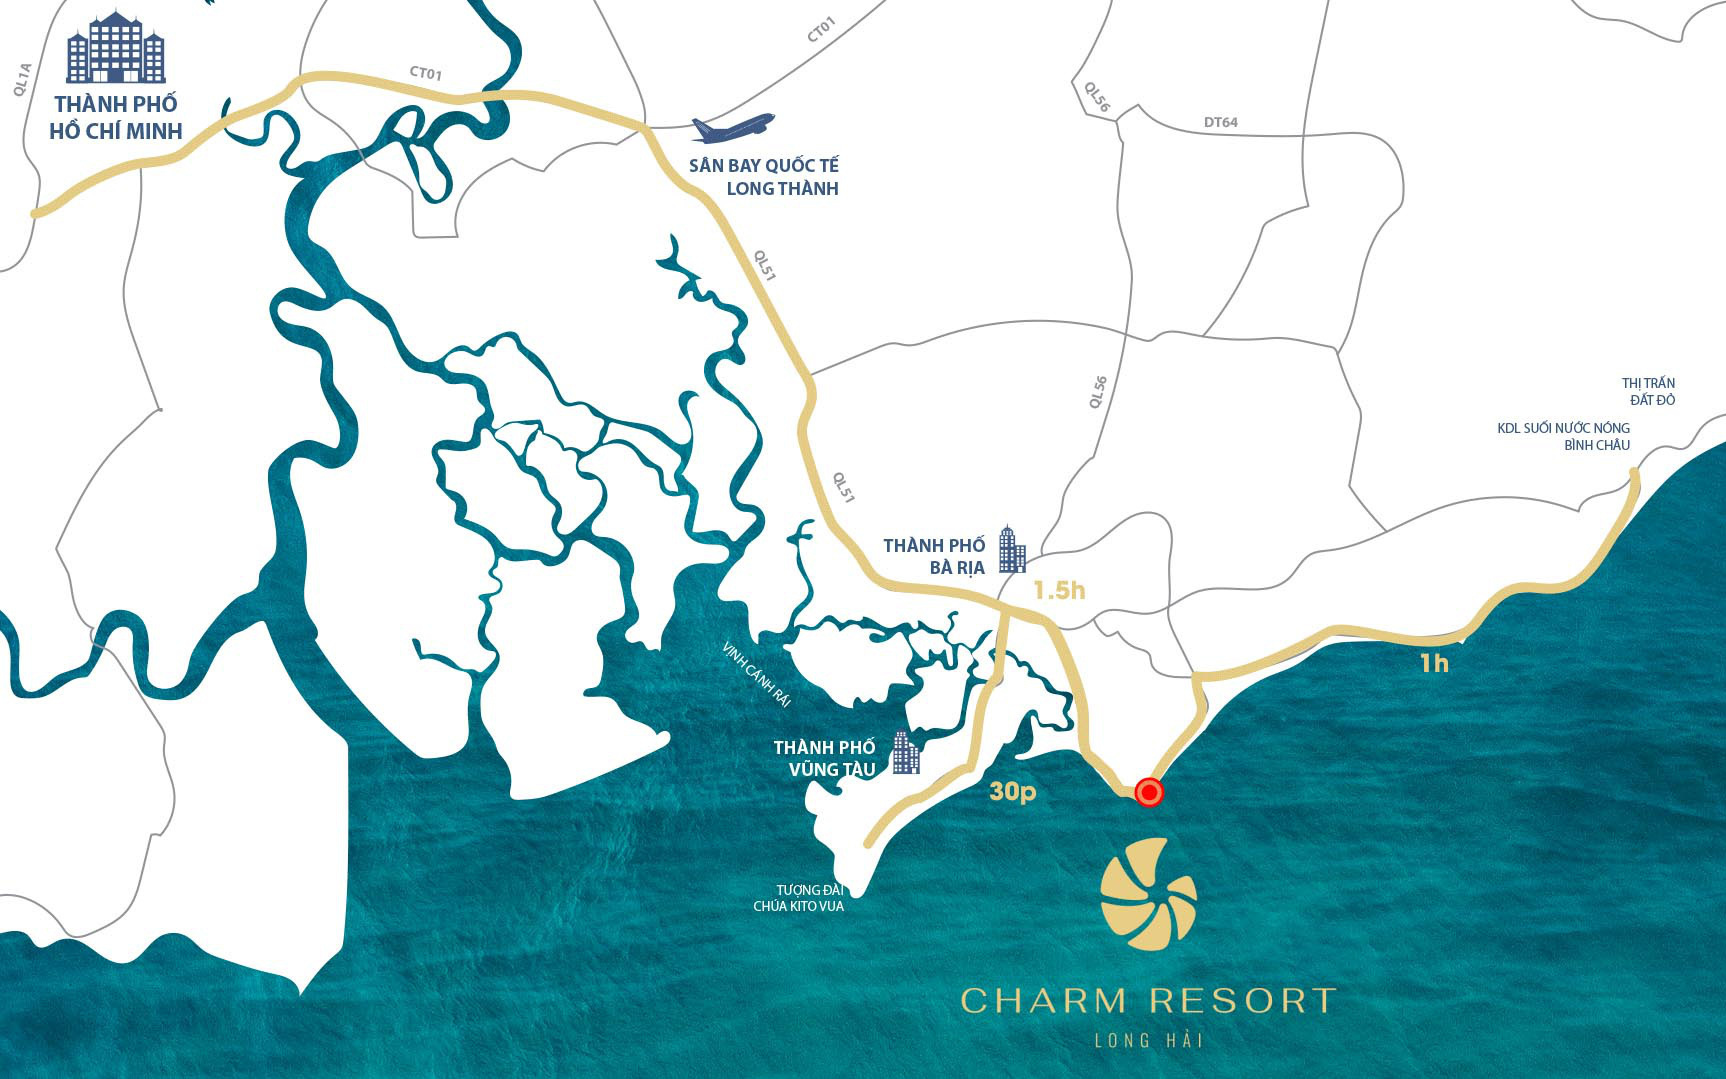 “Phong thủy vượng khí” – Yếu tố đắt giá tại Charm Resort Long Hải